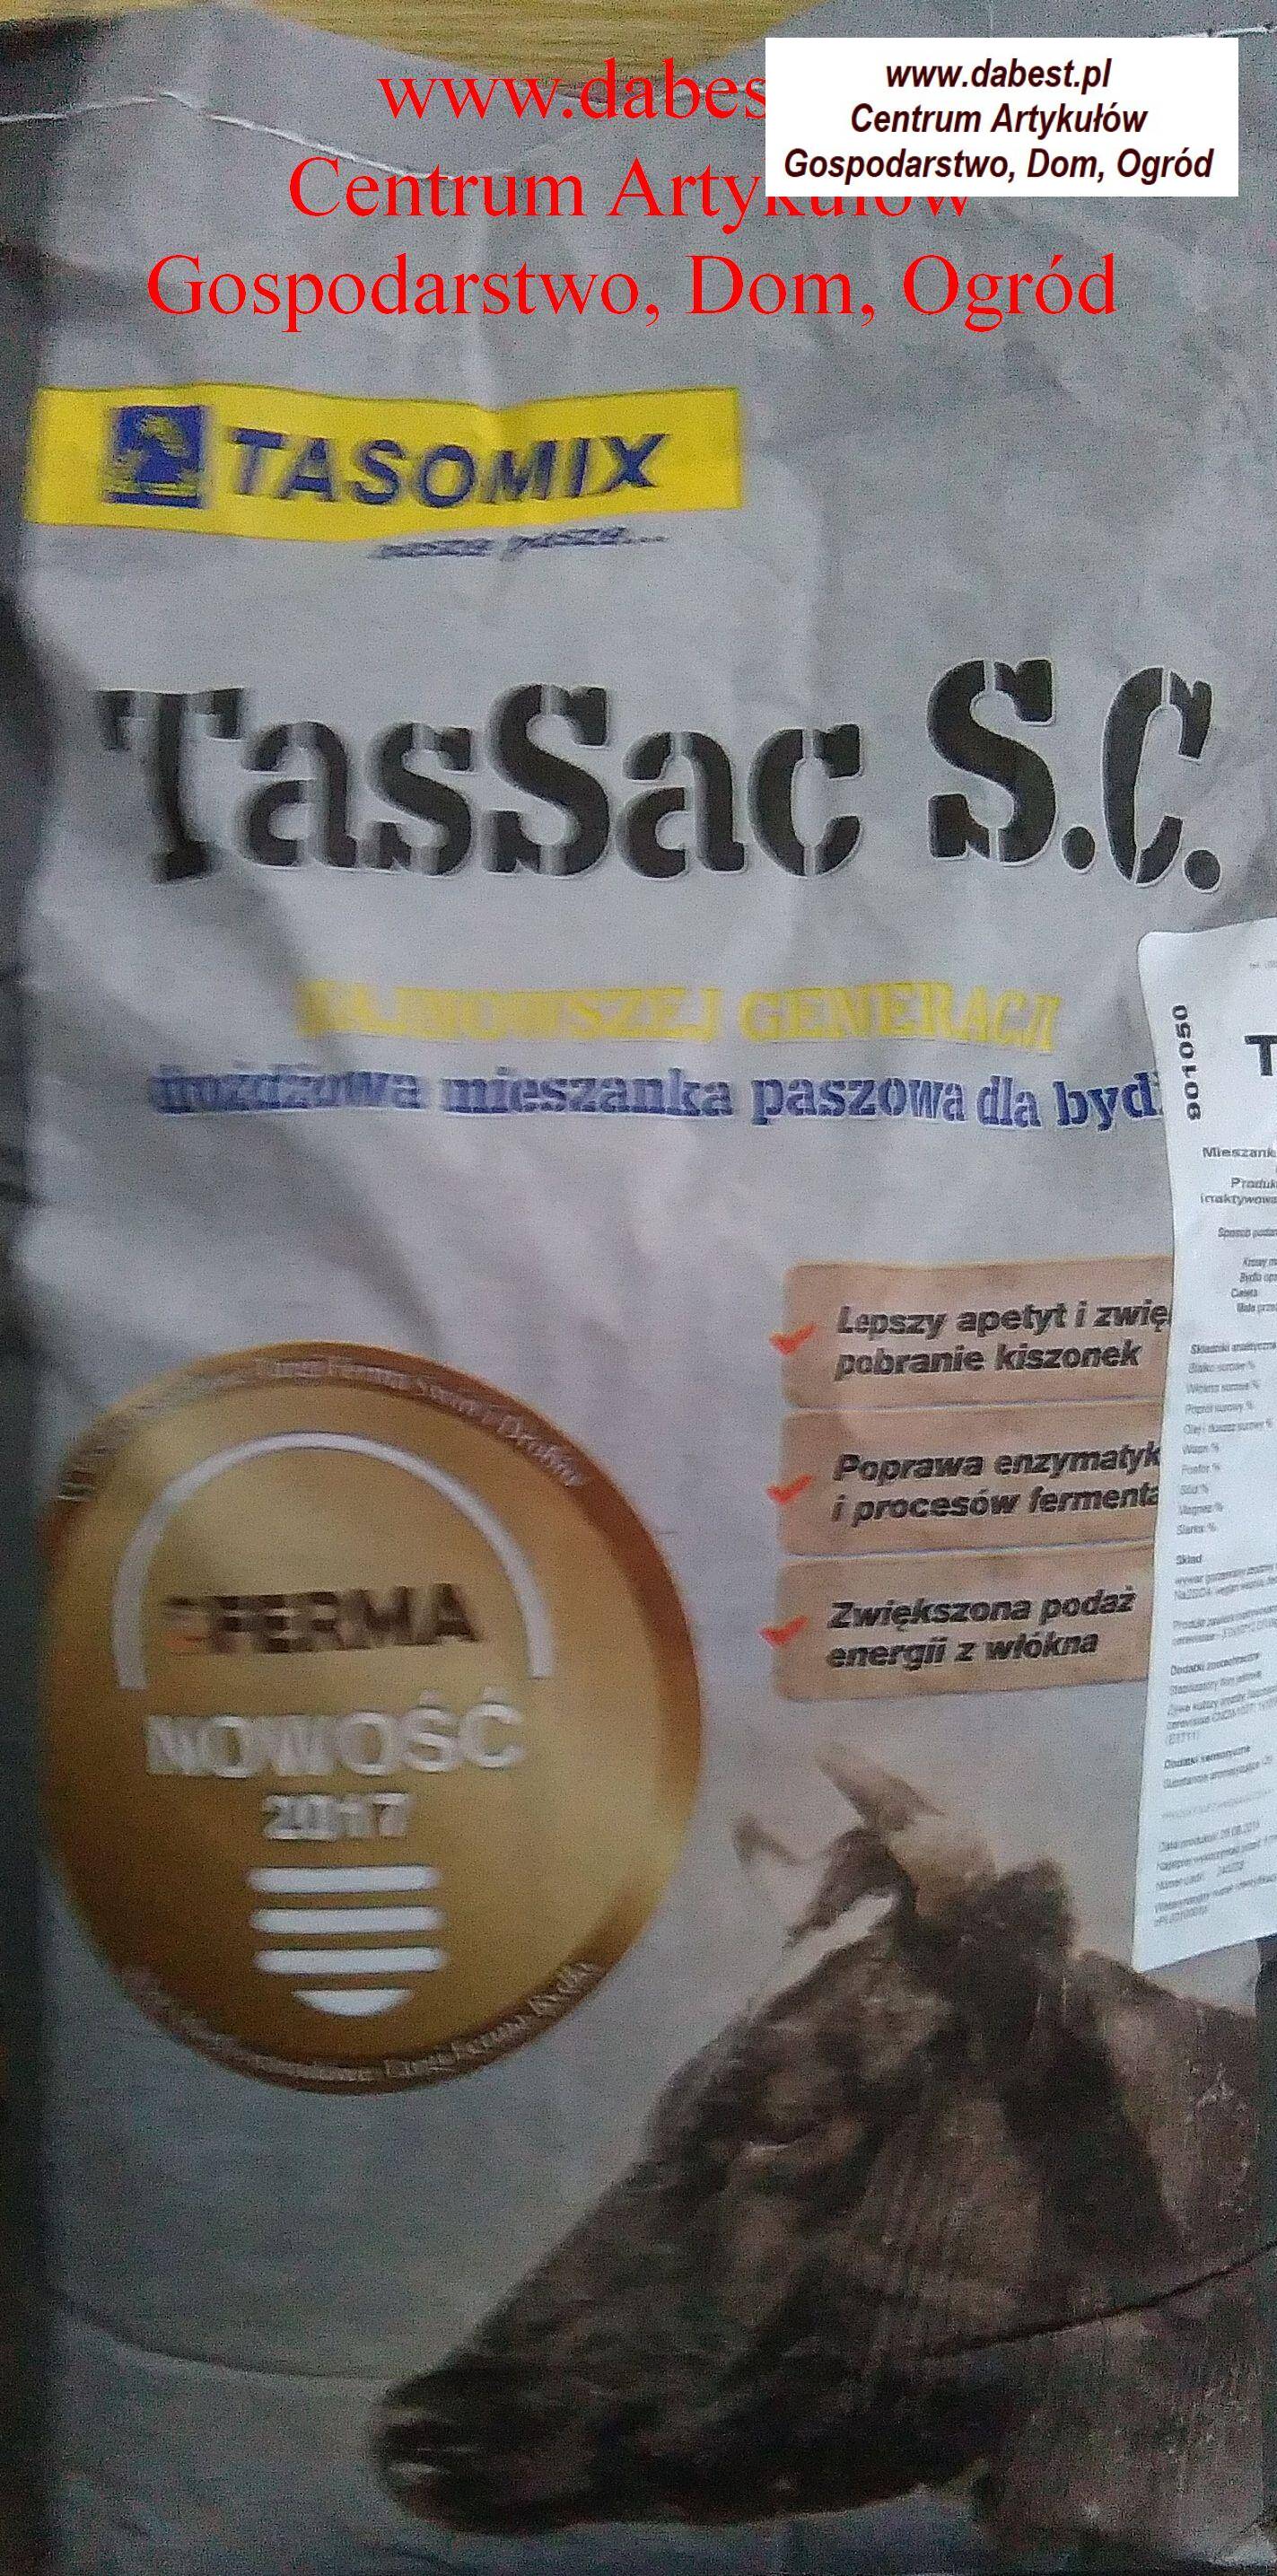 Tasomix - MPU Tasovit TasSac -10kg